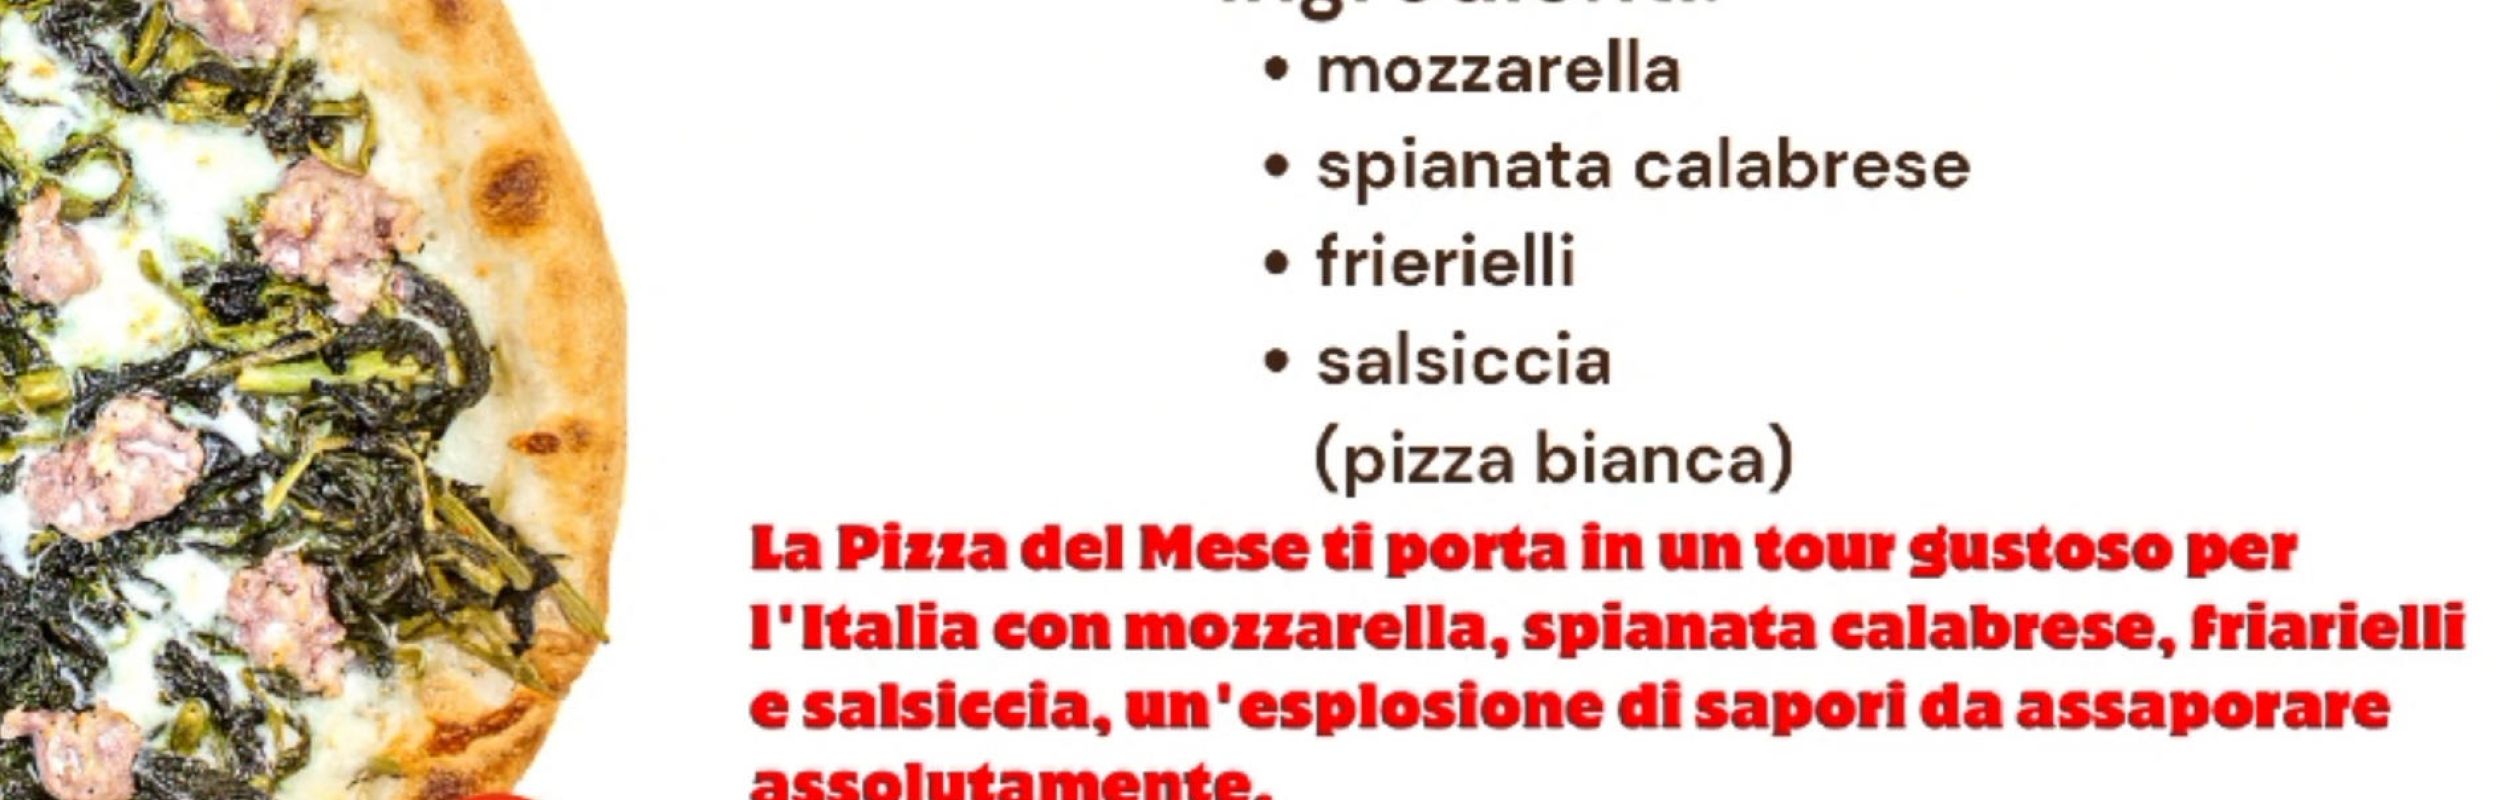 Novità !! Pizza del mese friarielli  - La nostra novità la pizza del mese ti porta in un tour gustoso per l'Italia con mozzarella, spianata calabrese, f...